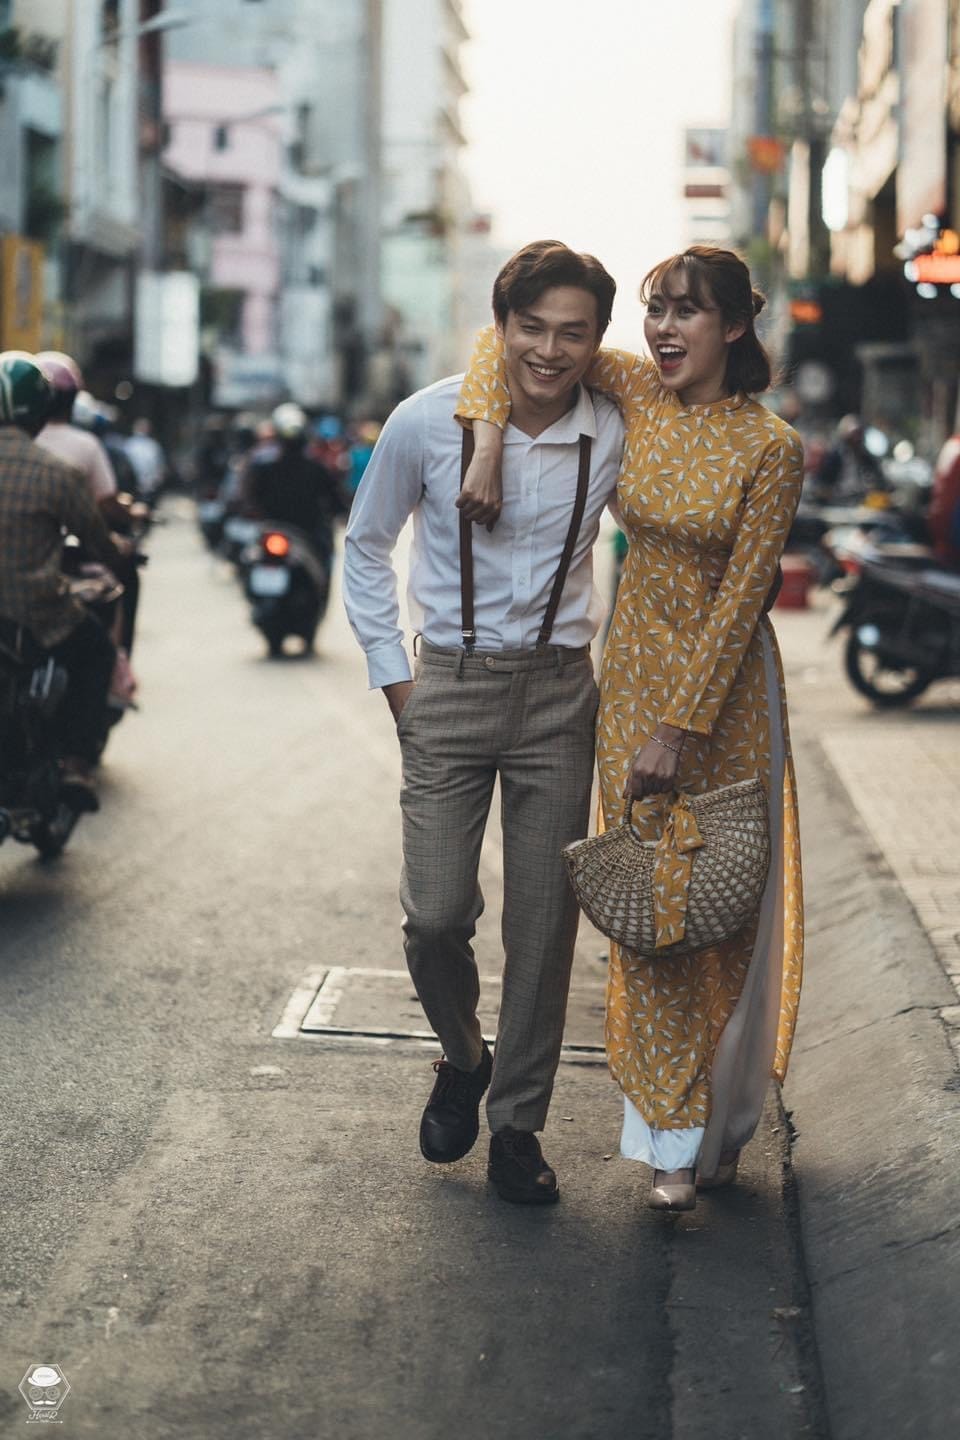 Tiktoker Việt Phương Thoa đú trend hóa cô dâu, netizen đồng loạt réo tên Chí Thành vào vai chú rể - ảnh 9